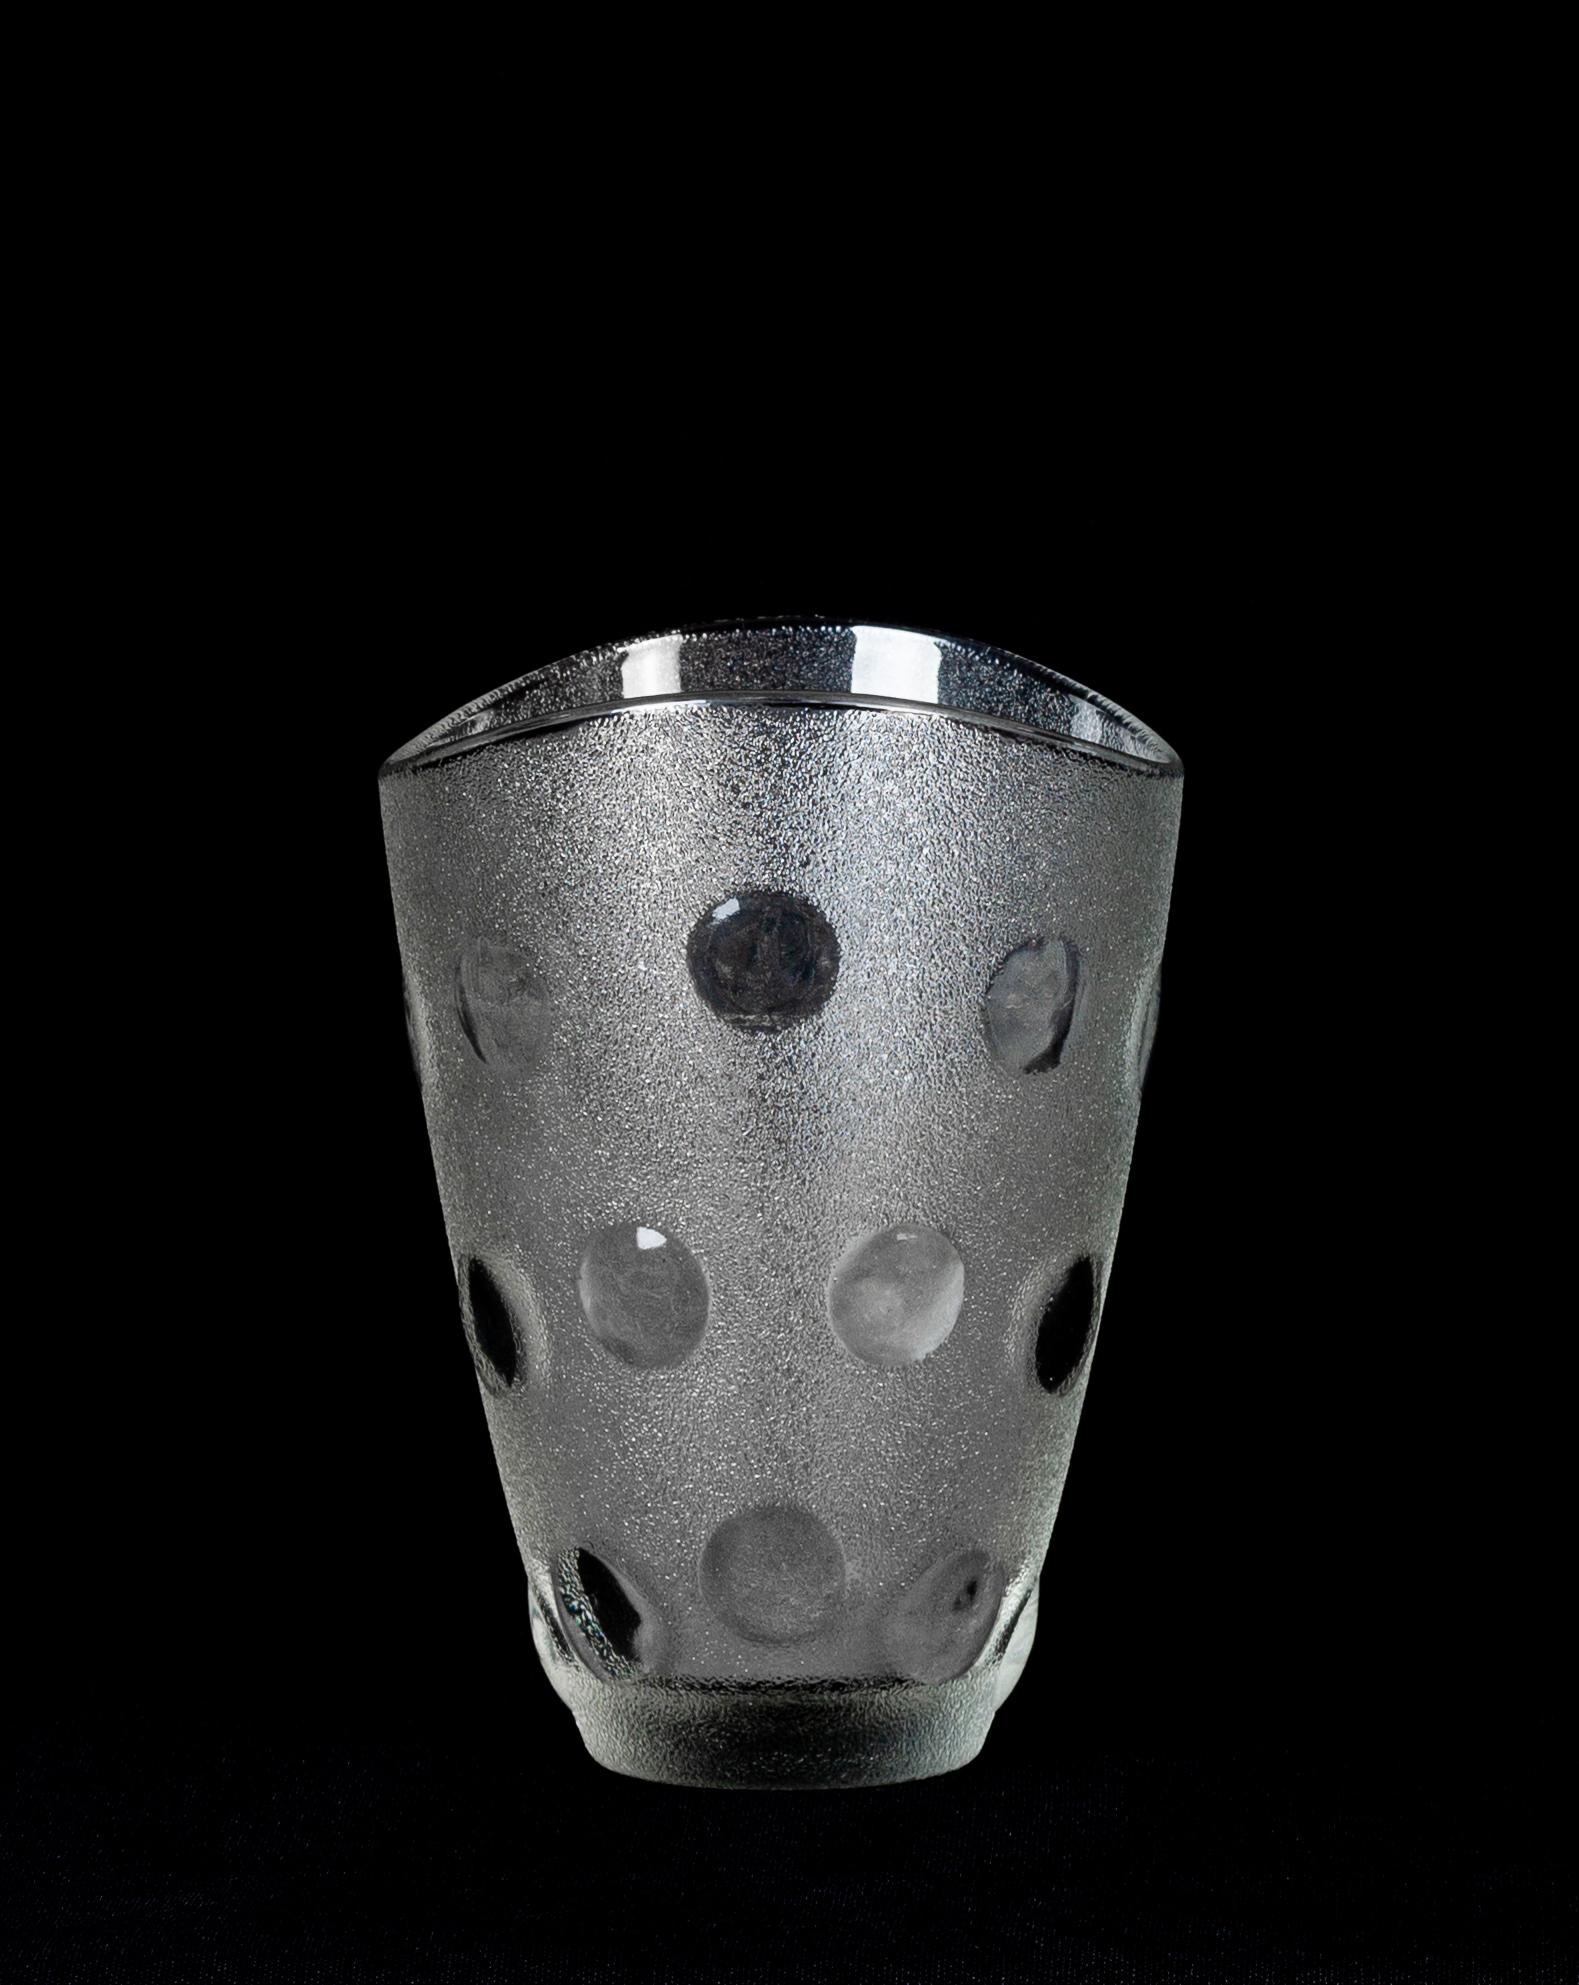 Le petit vase en verre est un merveilleux objet décoratif en verre, réalisé par une manufacture italienne dans les années 1970. 

Petit vase très à la mode avec des décorations de forme ronde le long du corps.

Bonnes conditions.